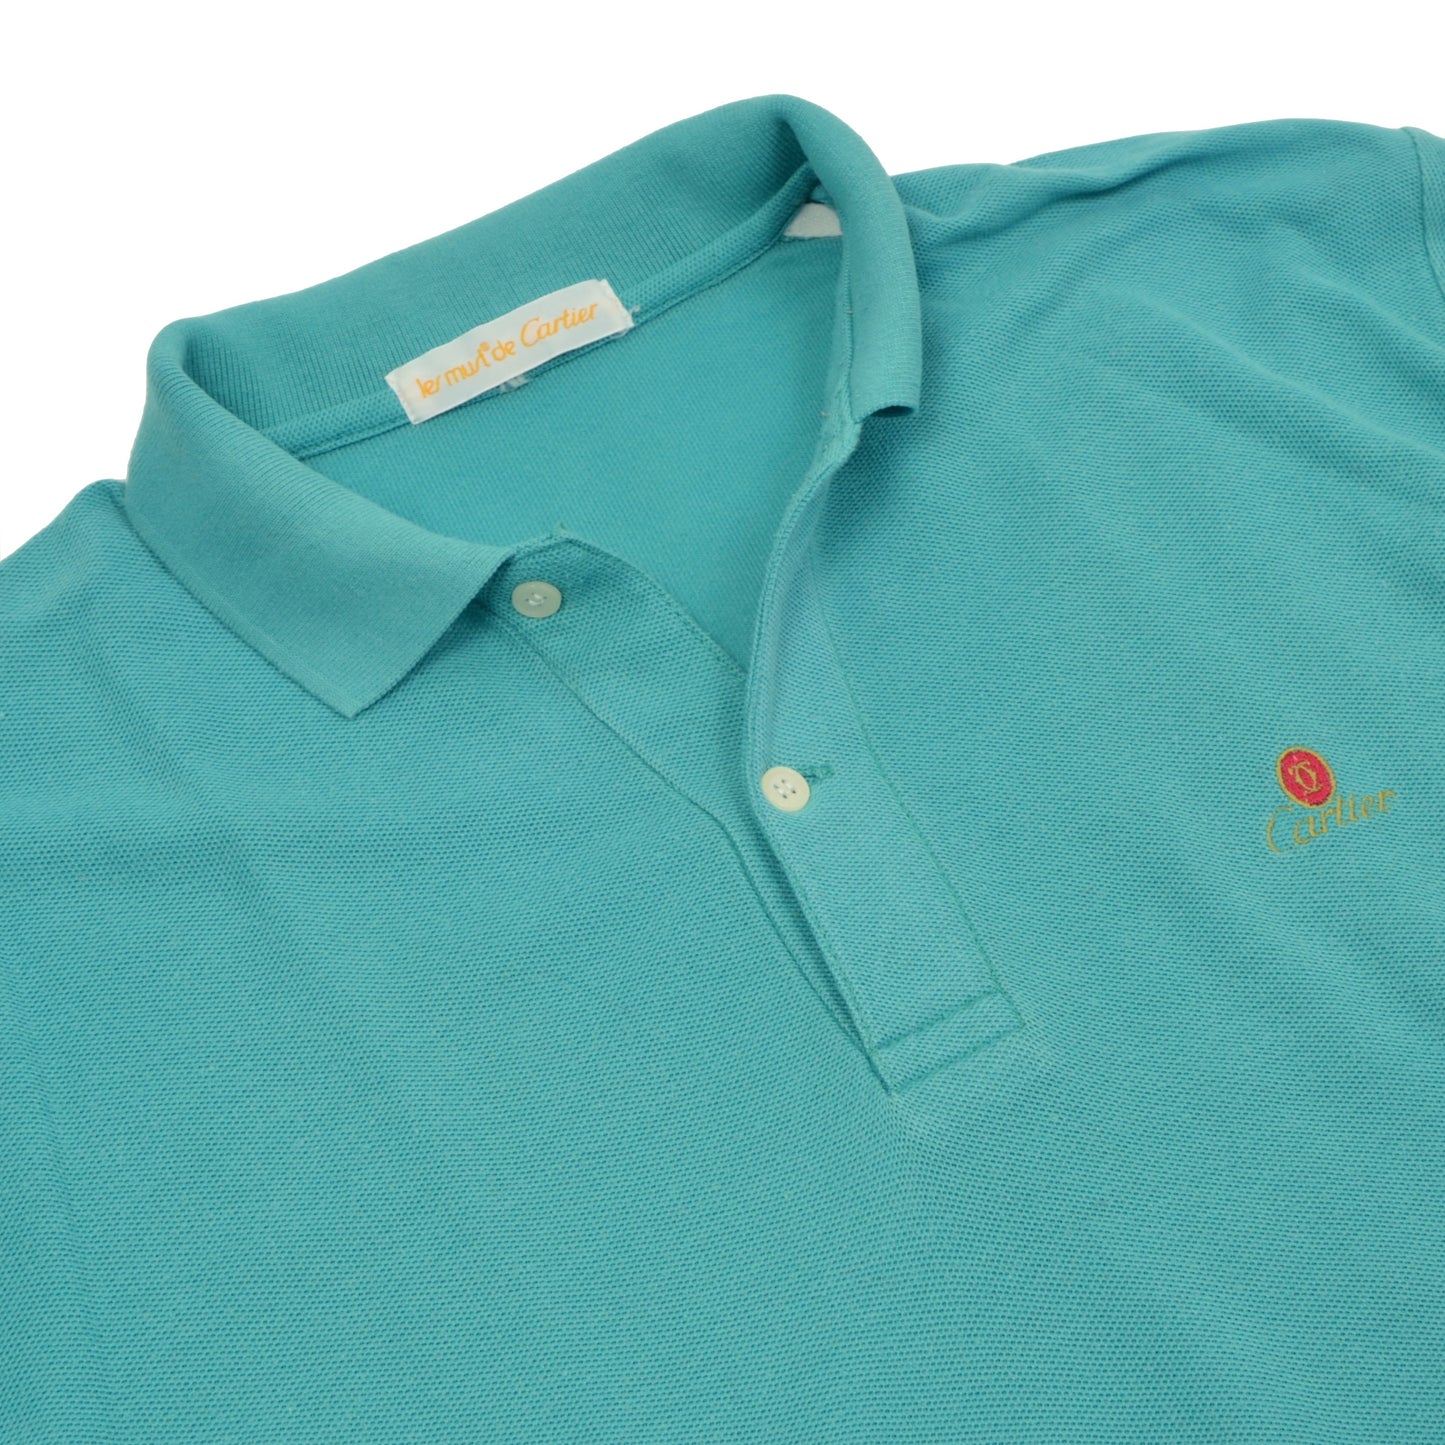 Vintage Les Must de Cartier LS Polo Shirt - Turquoise